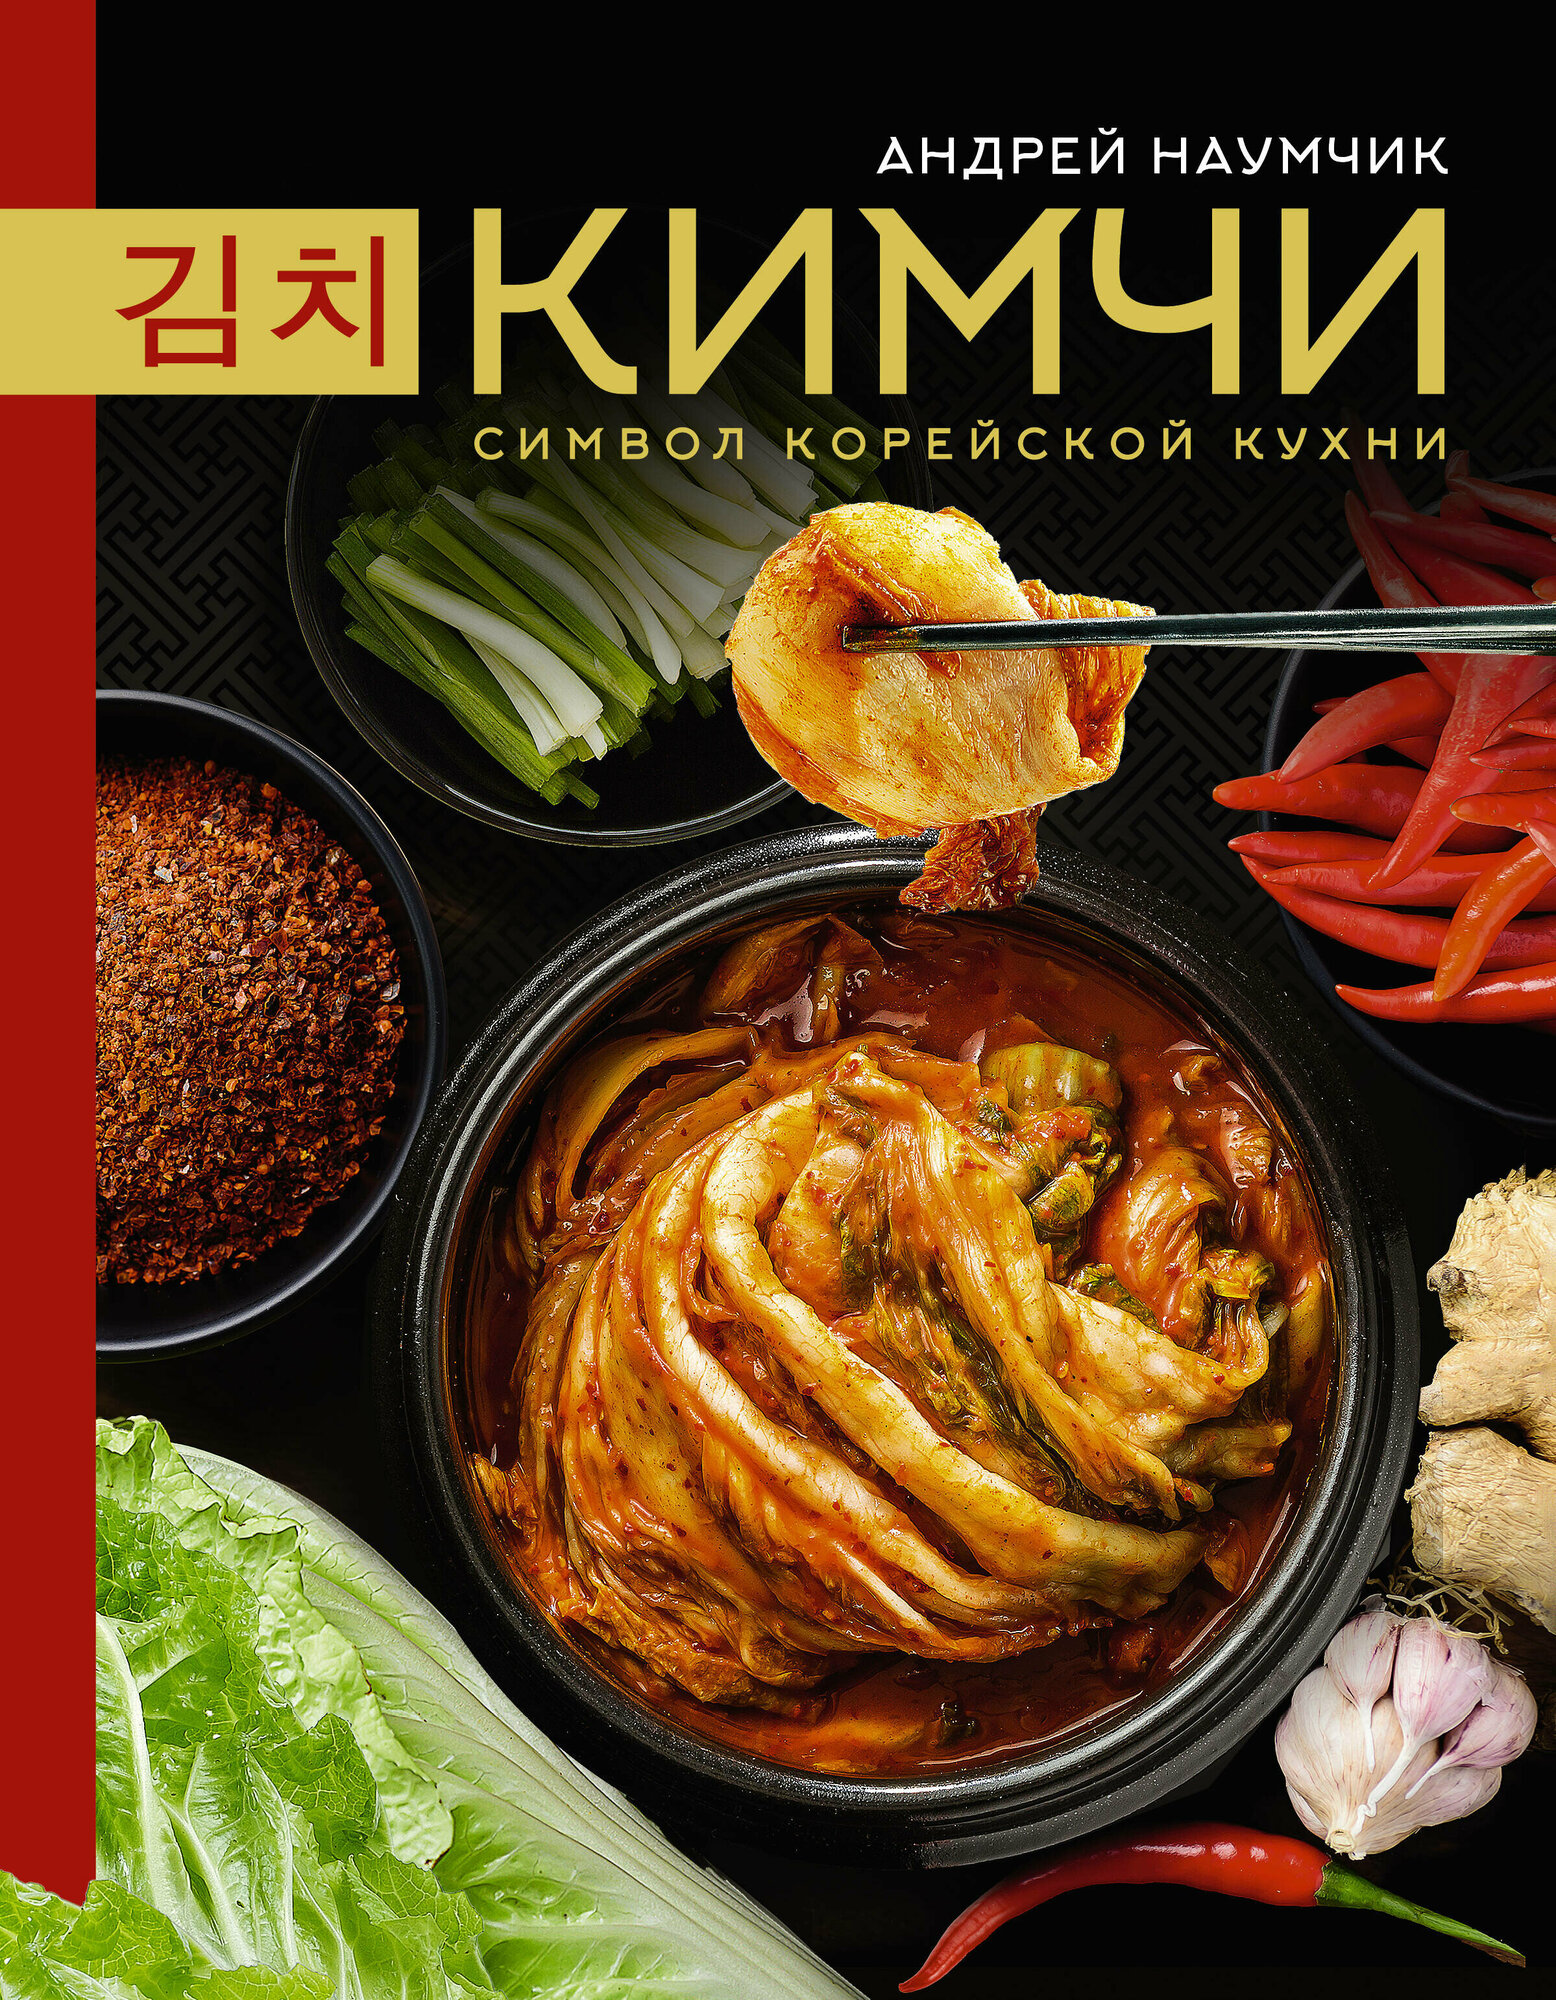 Кимчи. Символ корейской кухни. - фото №1